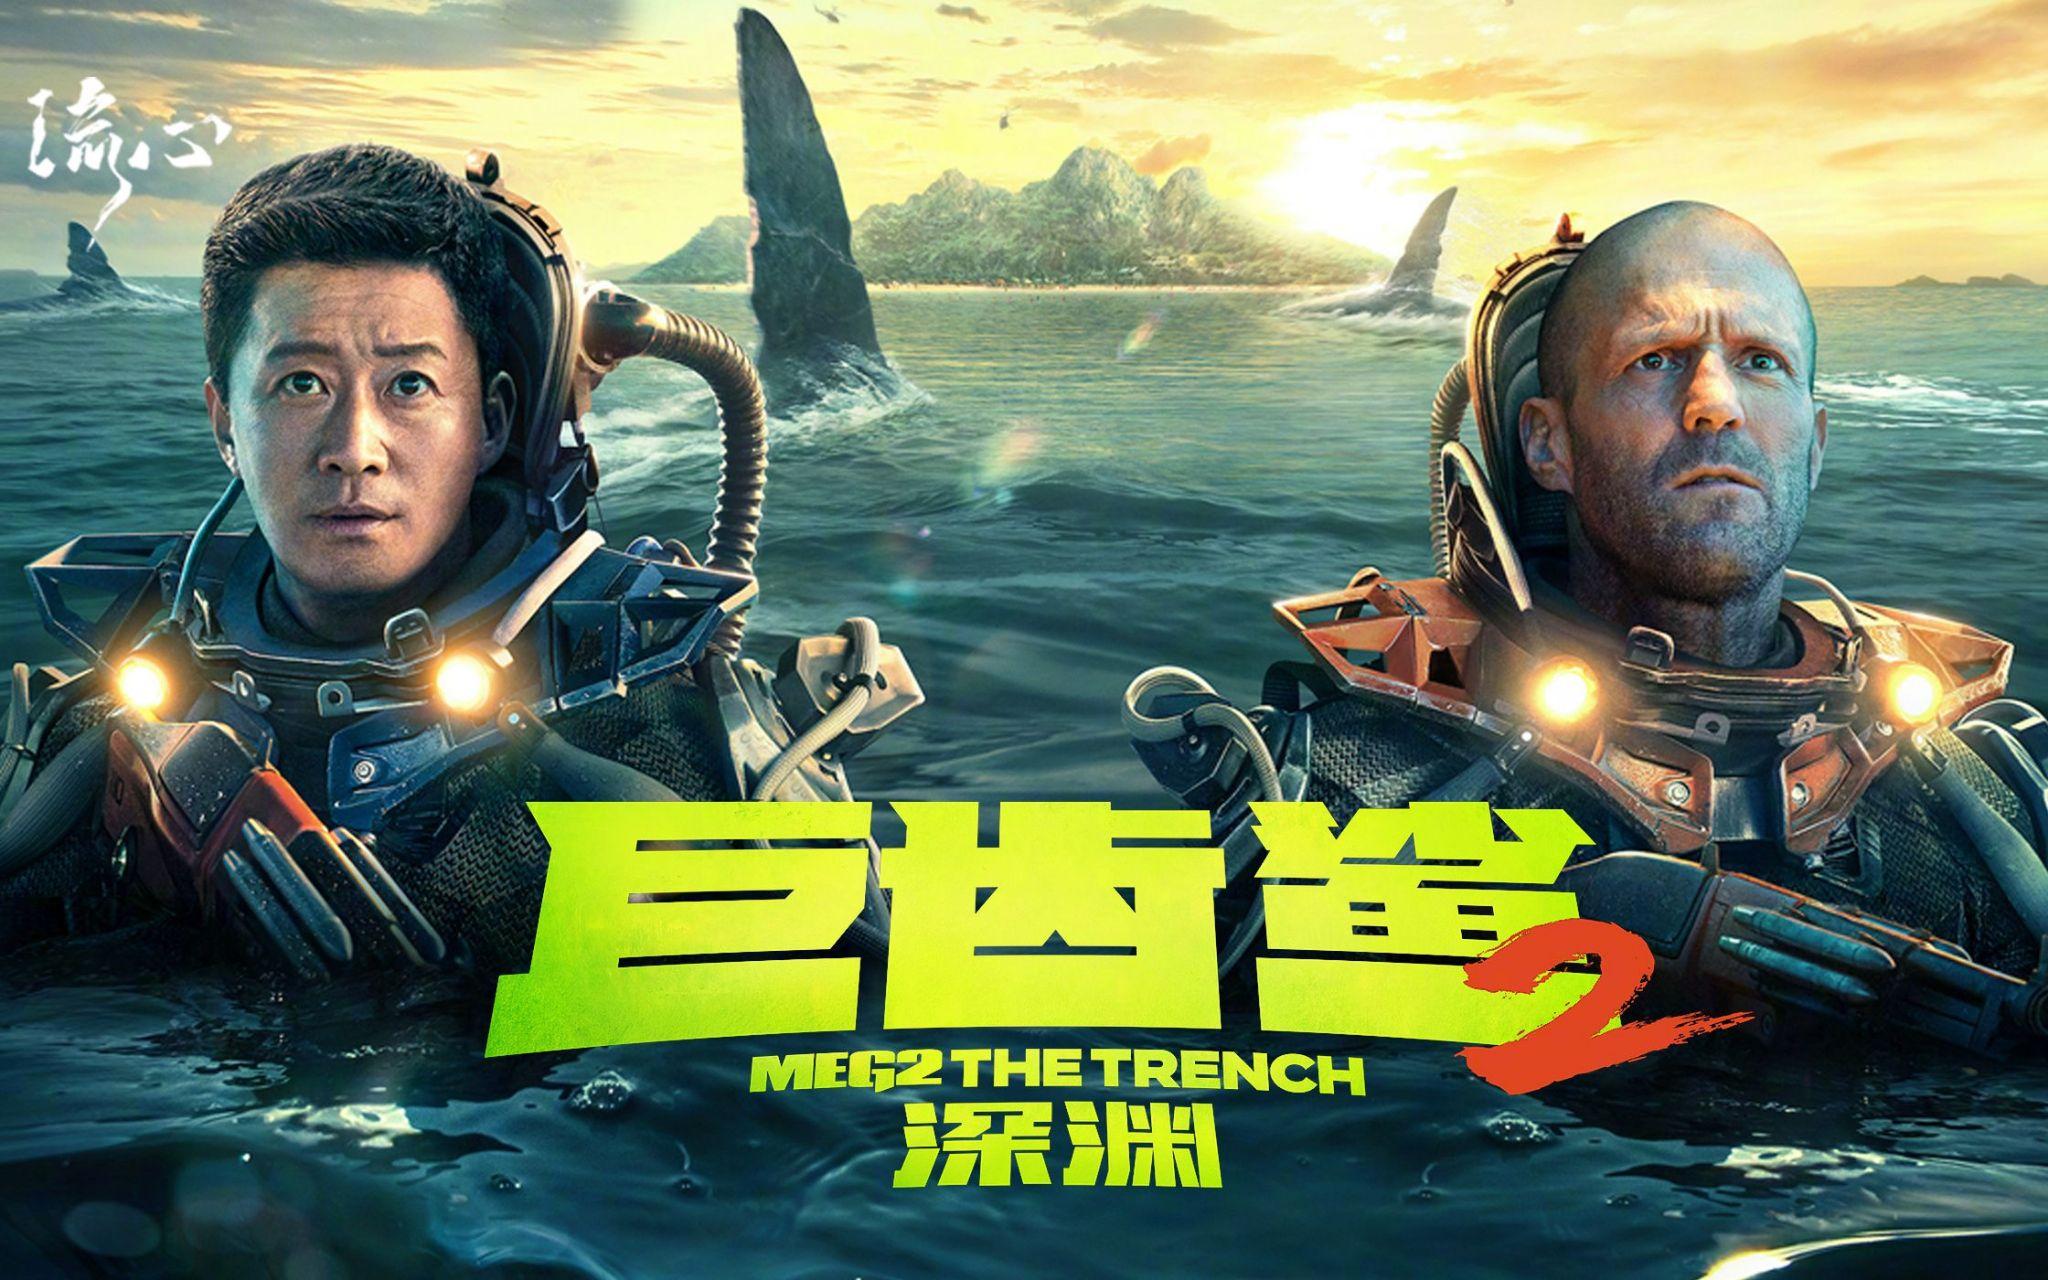 吴京《巨齿鲨2:深渊》的火爆,对于在中国市场低迷的好莱坞电影有哪些